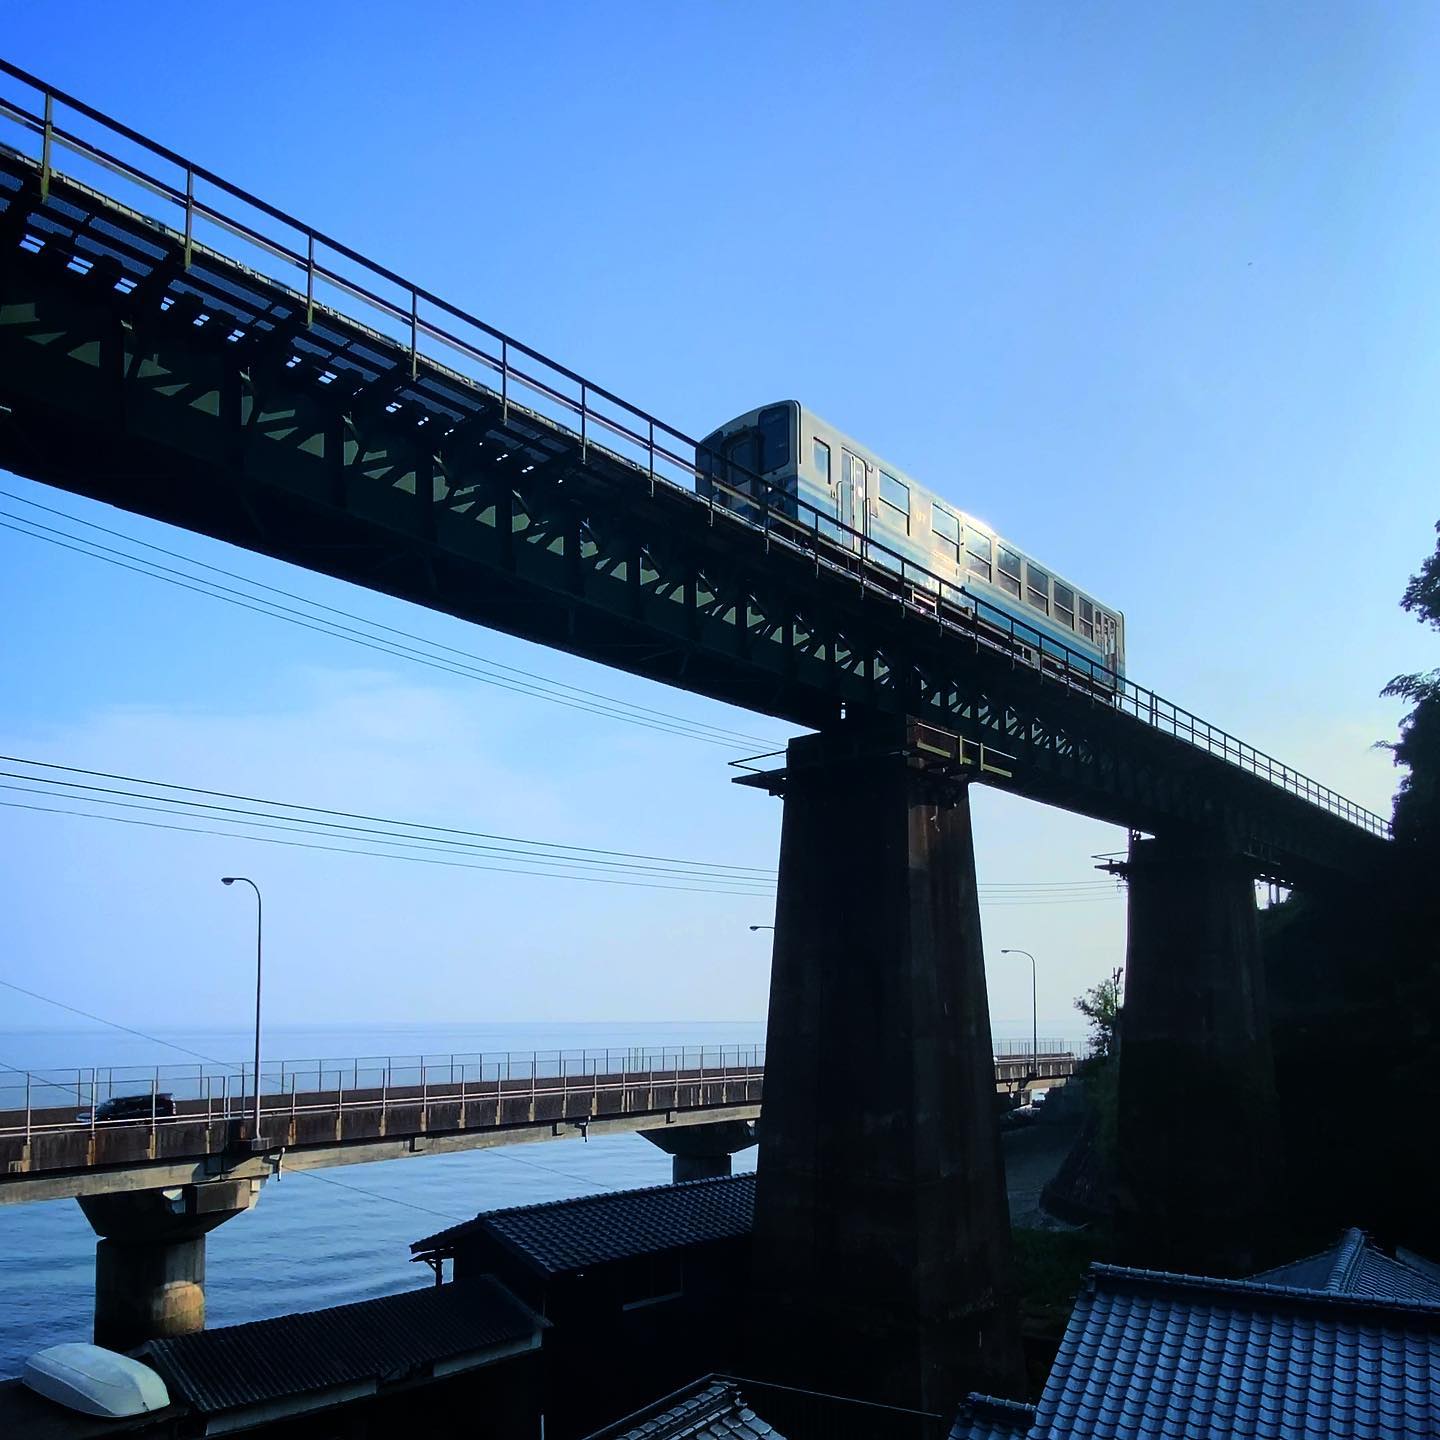 朝、早起きできたのでクルマを走らせて撮影に出かける。前々から気になってた鉄橋を走る列車。なかなか良い感じに撮れたかな（自画自賛）。ちなみに動画からの切り出し写真です（手抜きww）